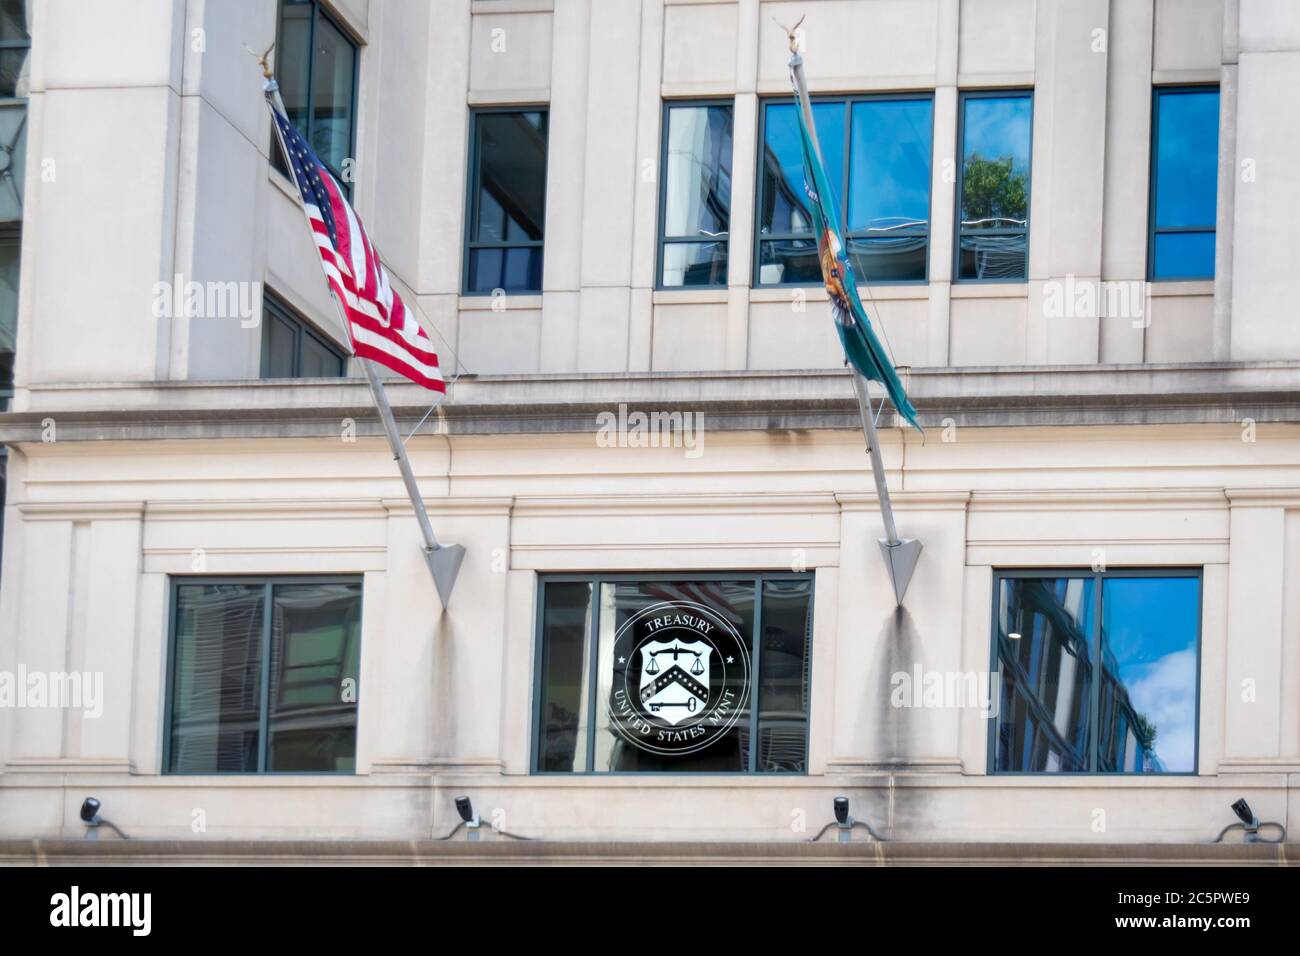 Washington, D.C. / USA - juillet 04 2020: Panneau à l'entrée du magasin de monnaie de la monnaie des Etats-Unis, Département du Trésor des Etats-Unis. Banque D'Images